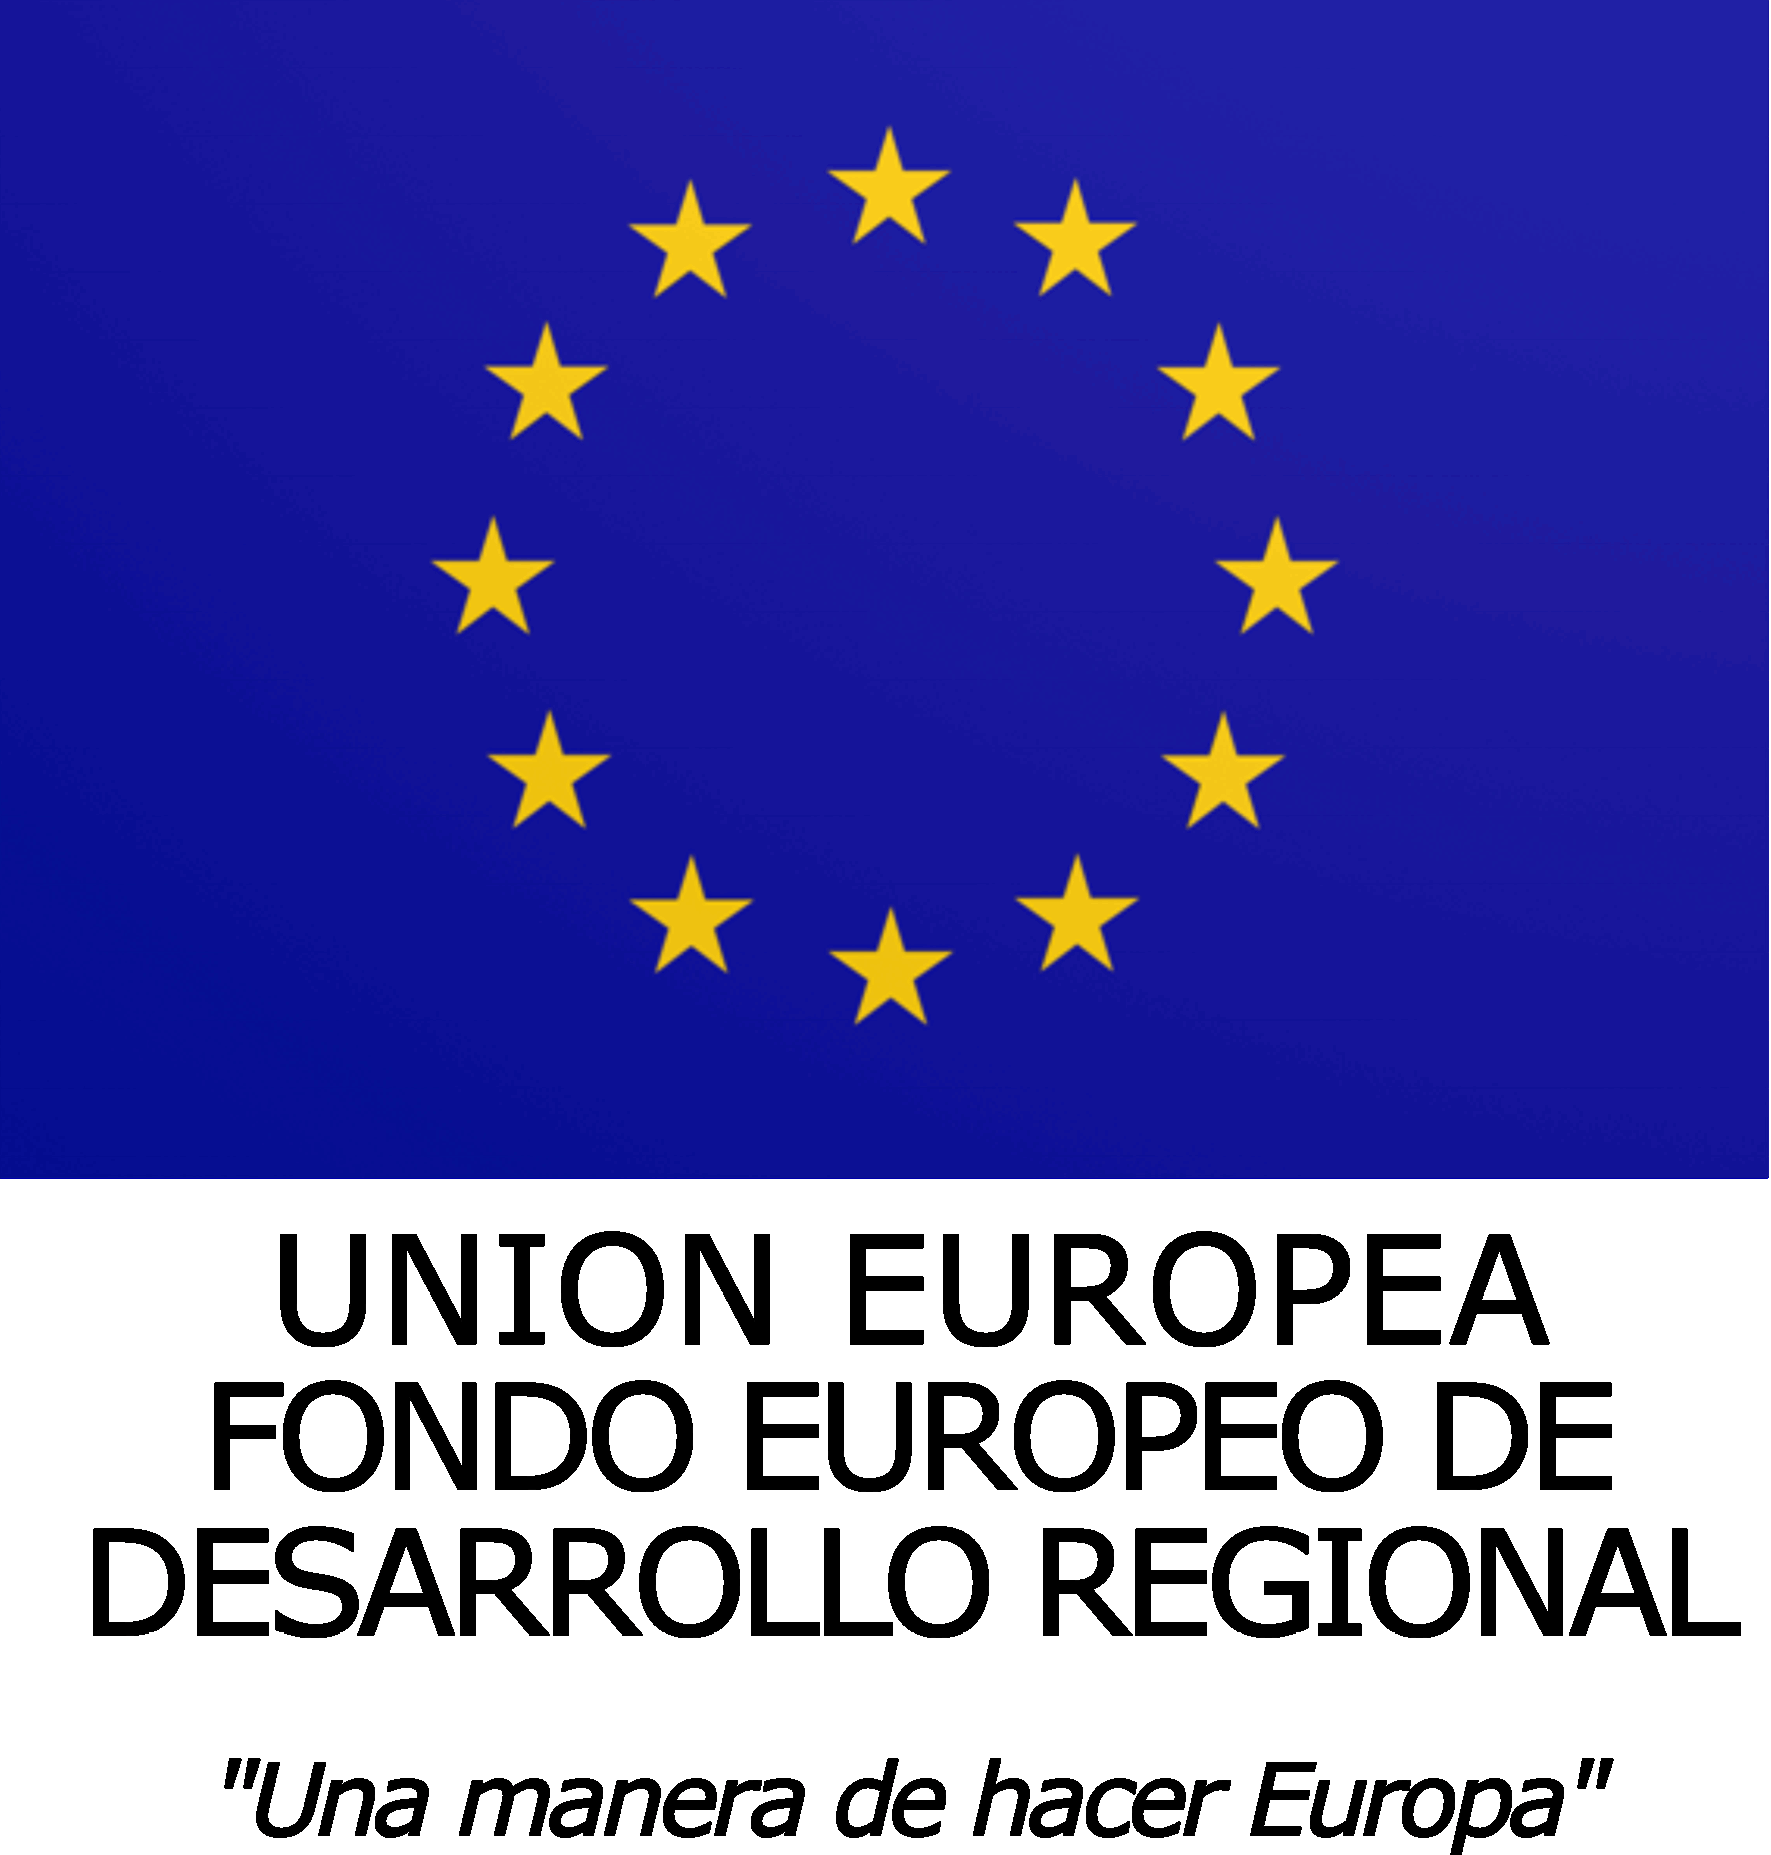 UNION EUROPEA. FONDO EUROPEO DE DESARROLLO REGIONAL. "Una manera de hacer Europa"